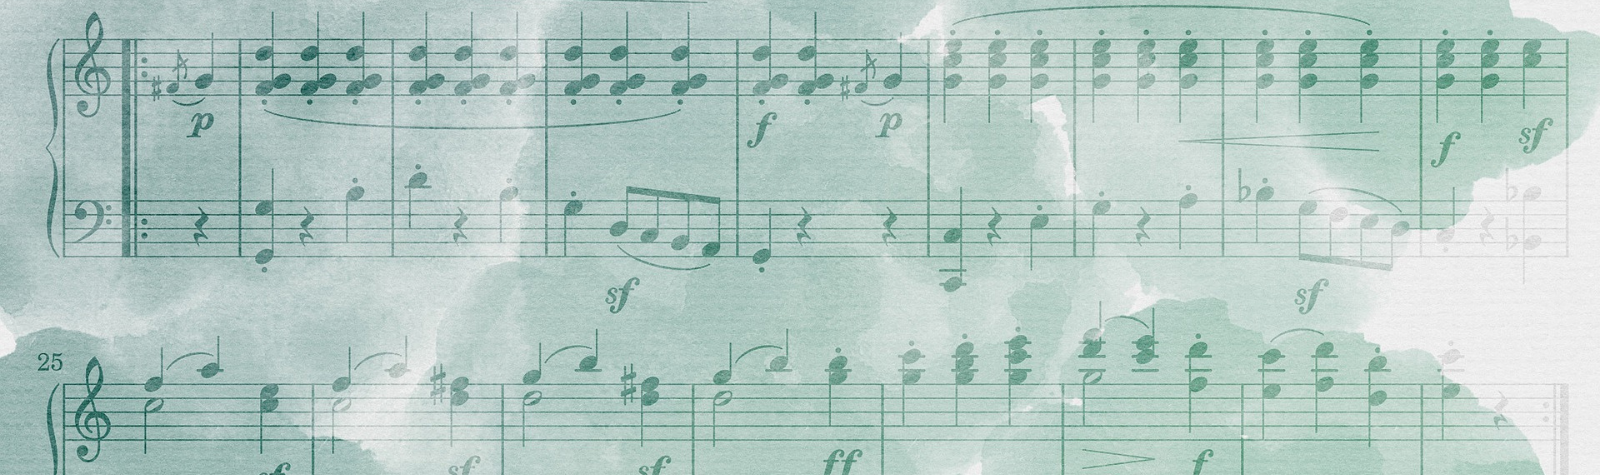 Program Notes for Rhapsody in Blue